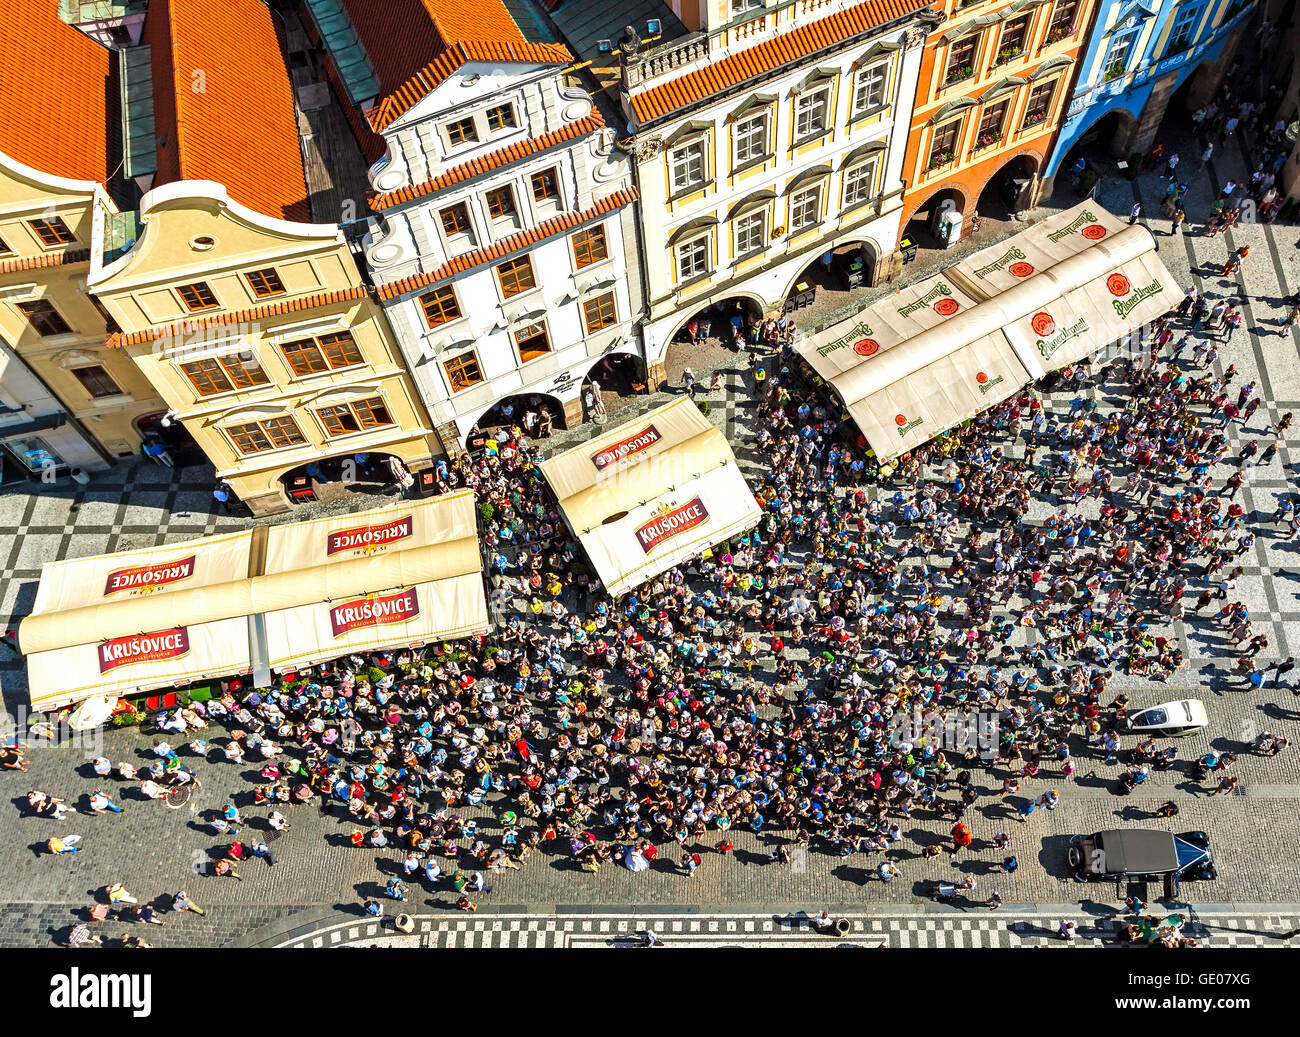 Prag, Tschechische Republik - 12. Juni 2014: Luftaufnahme von Touristen, die astronomische Uhr (Orloj) in der Altstadt von Prag zu beobachten. Stockfoto